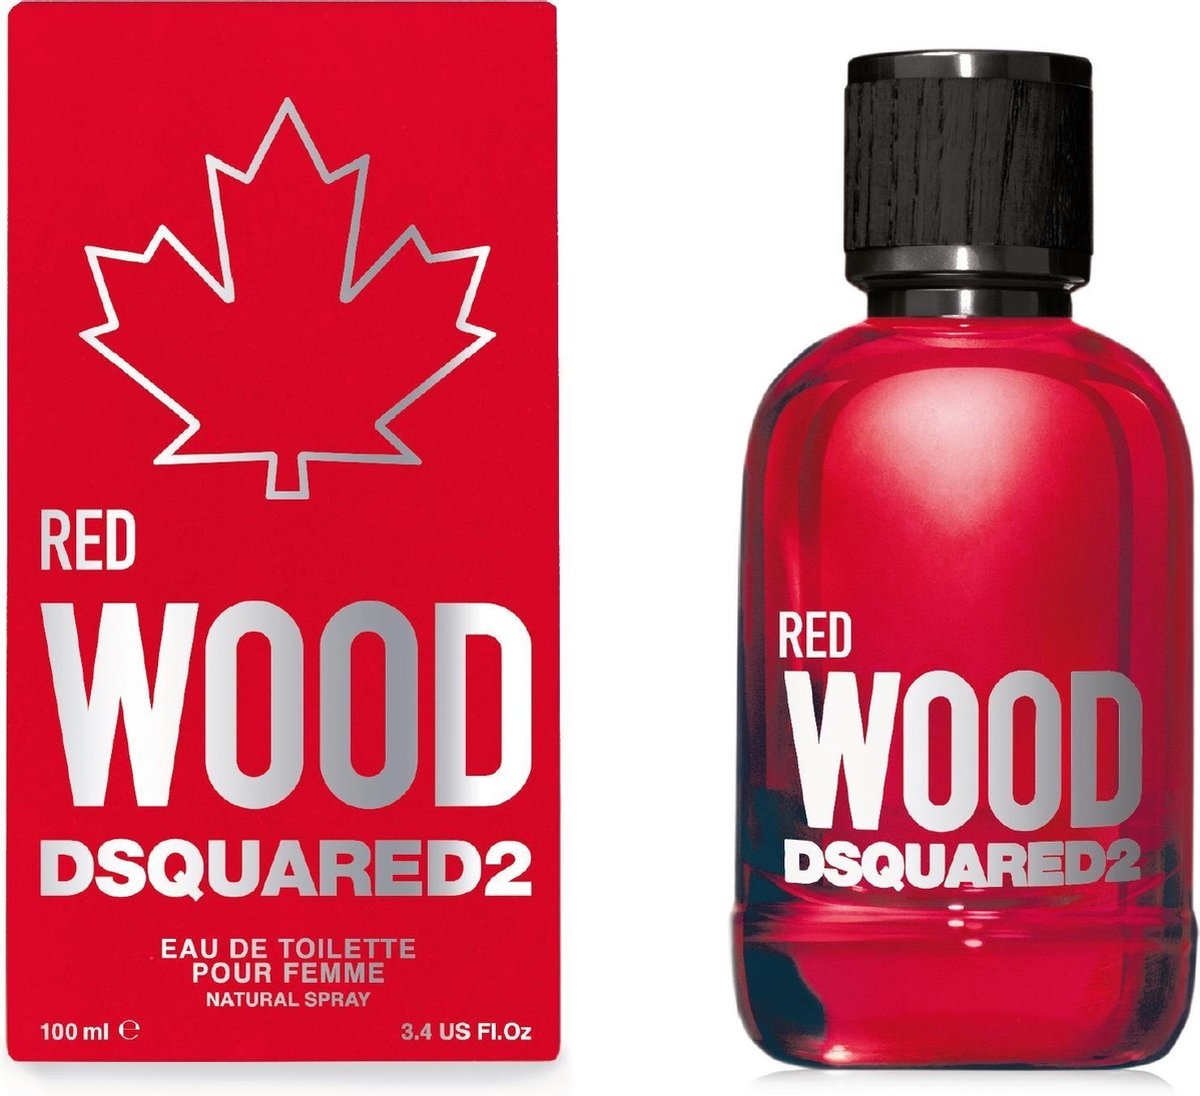 Dsquared2 Red Wood pour Femme - Eau de toilette - 100 ml - Women's perfume